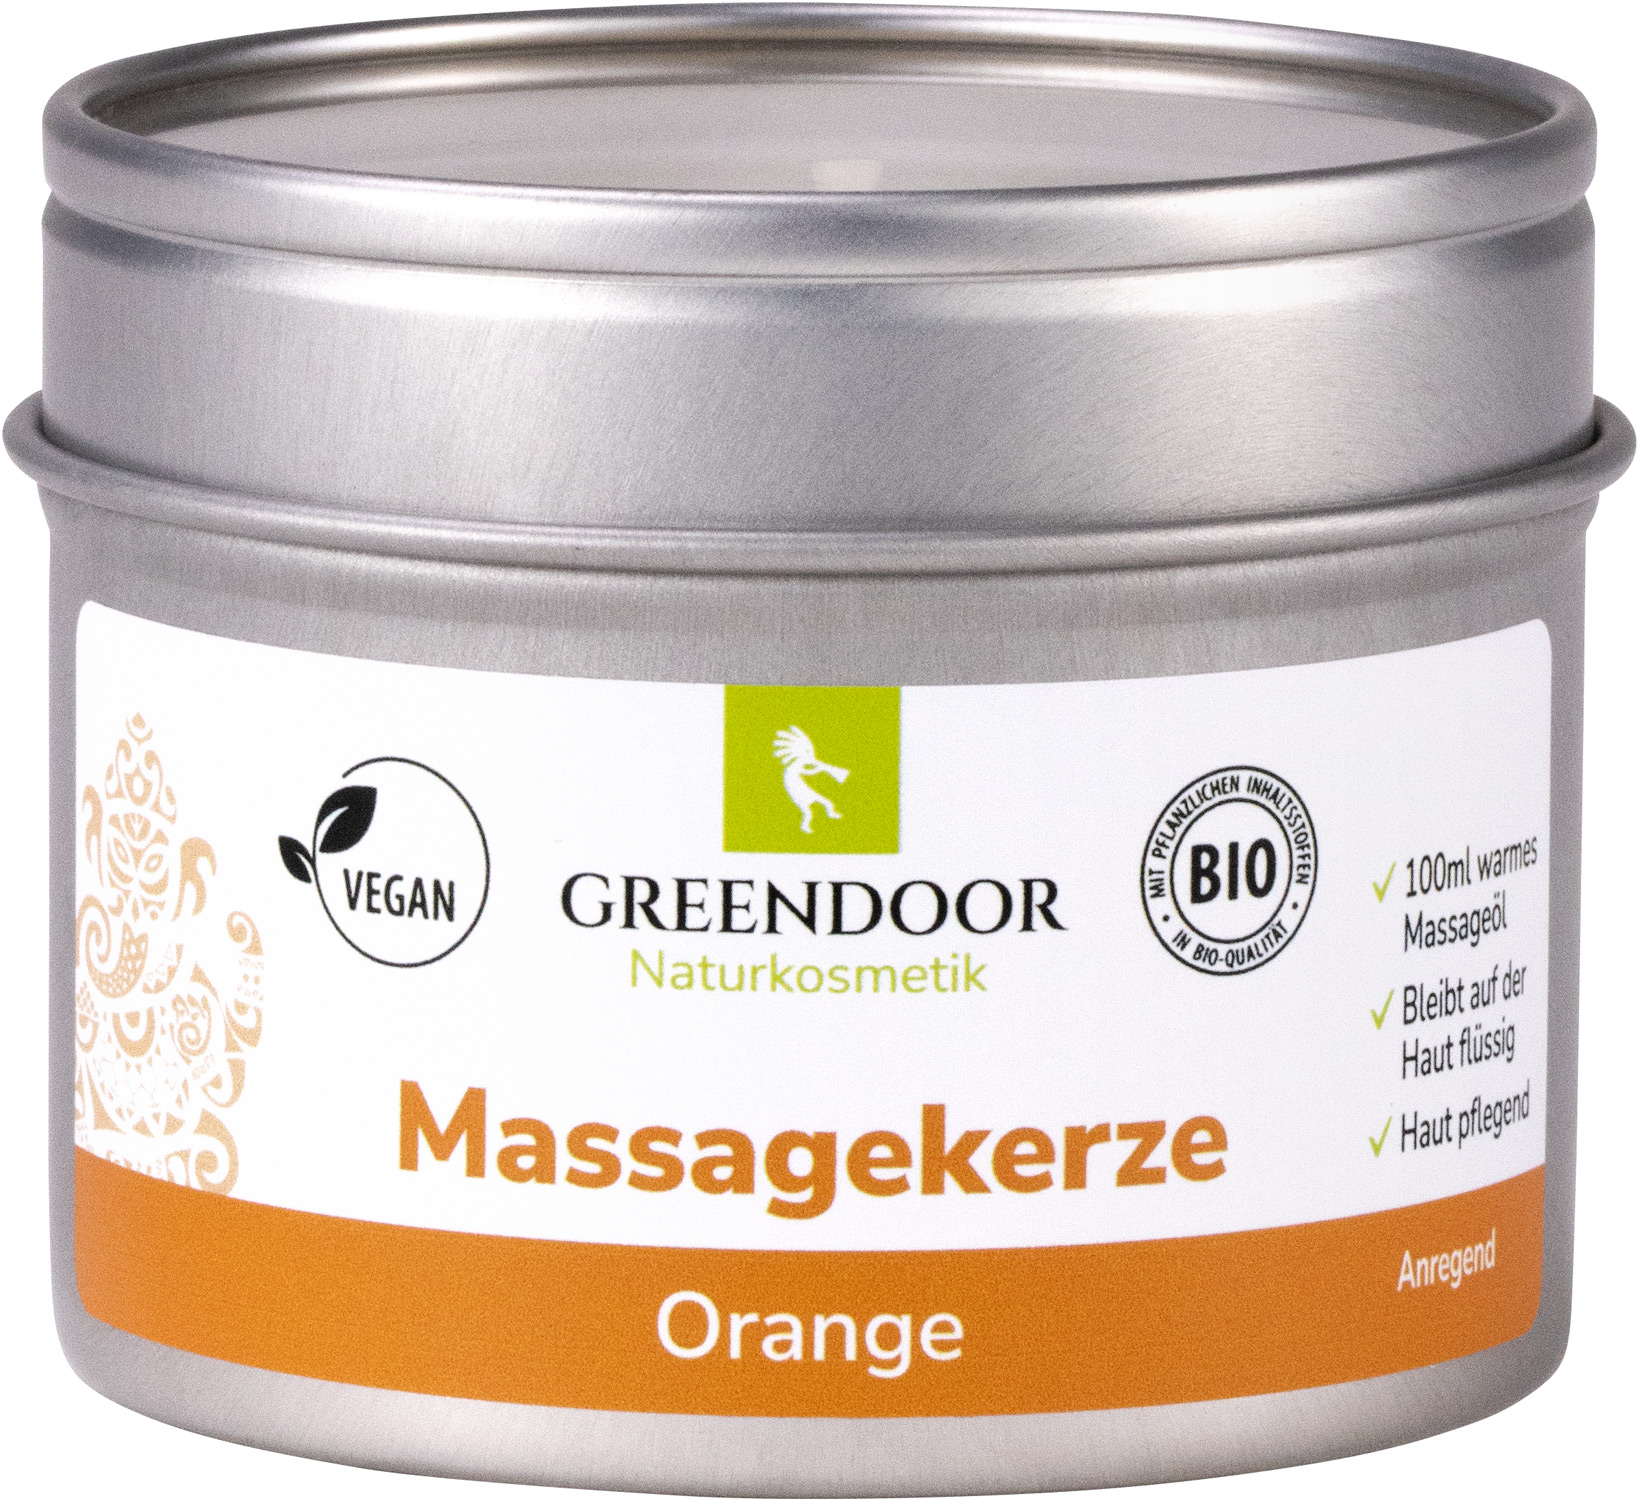 Zweite Wahl: Massagekerze Orange 100ml, vegan